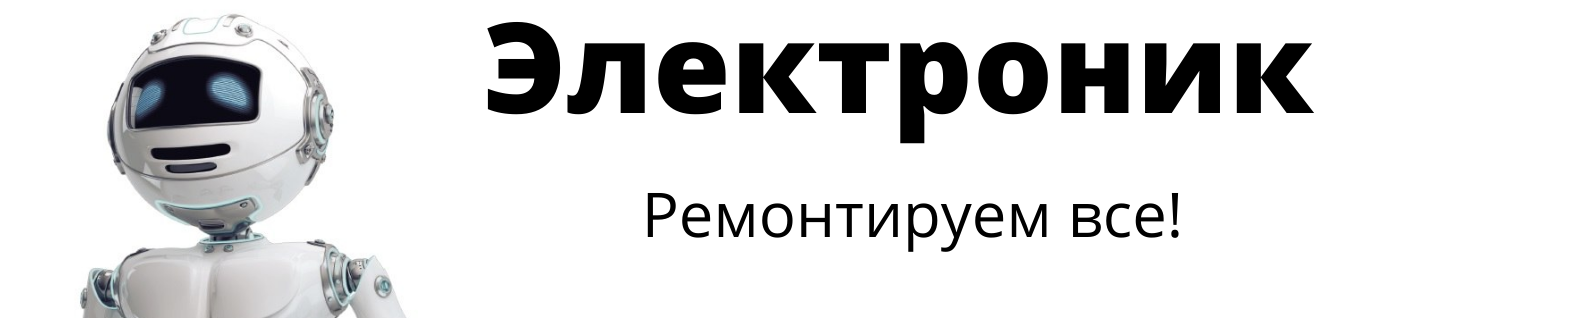 Логотип Электроник